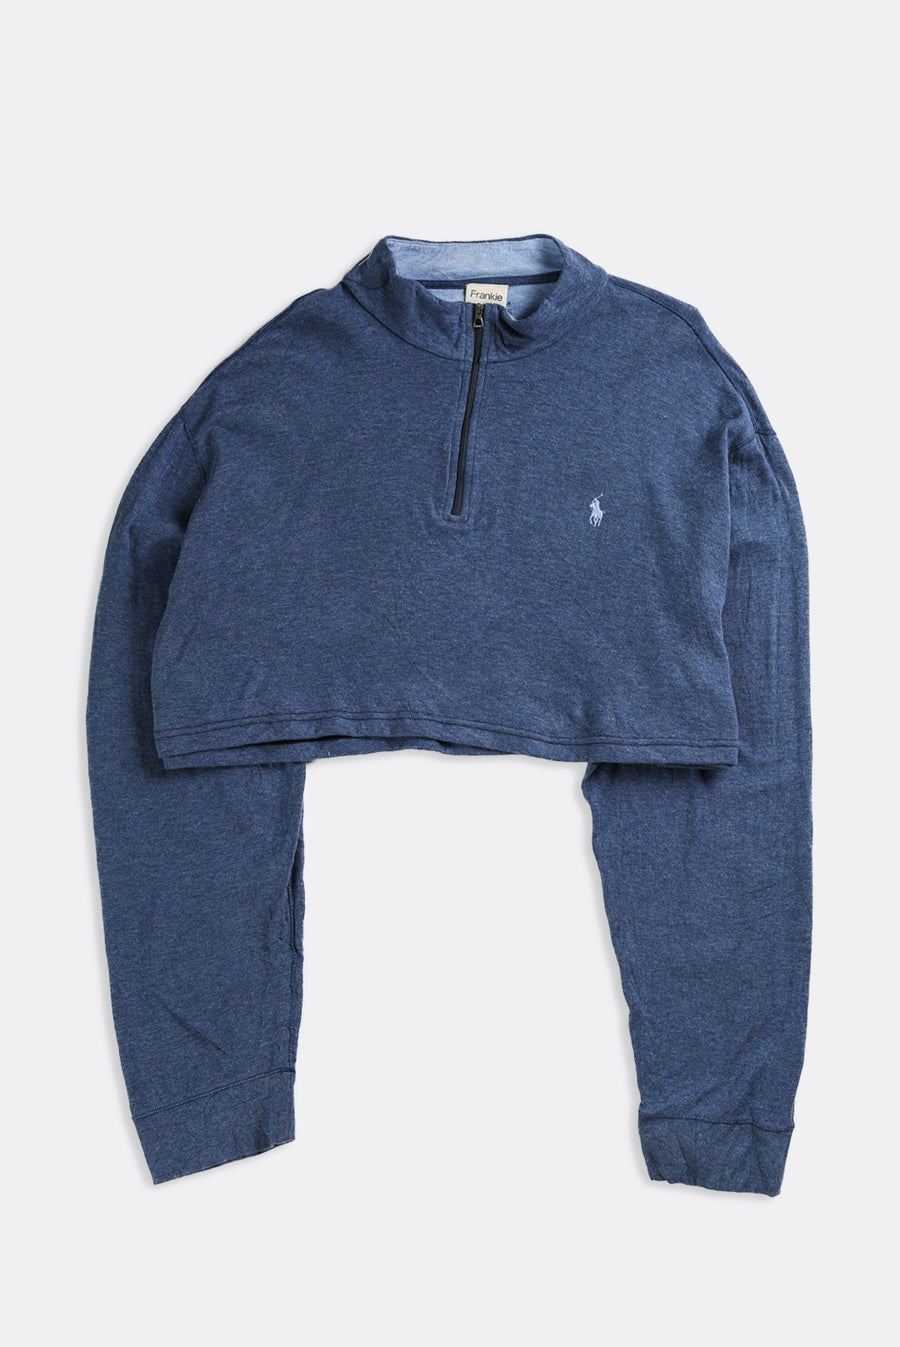 Rework Crop Sweatshirt - XL